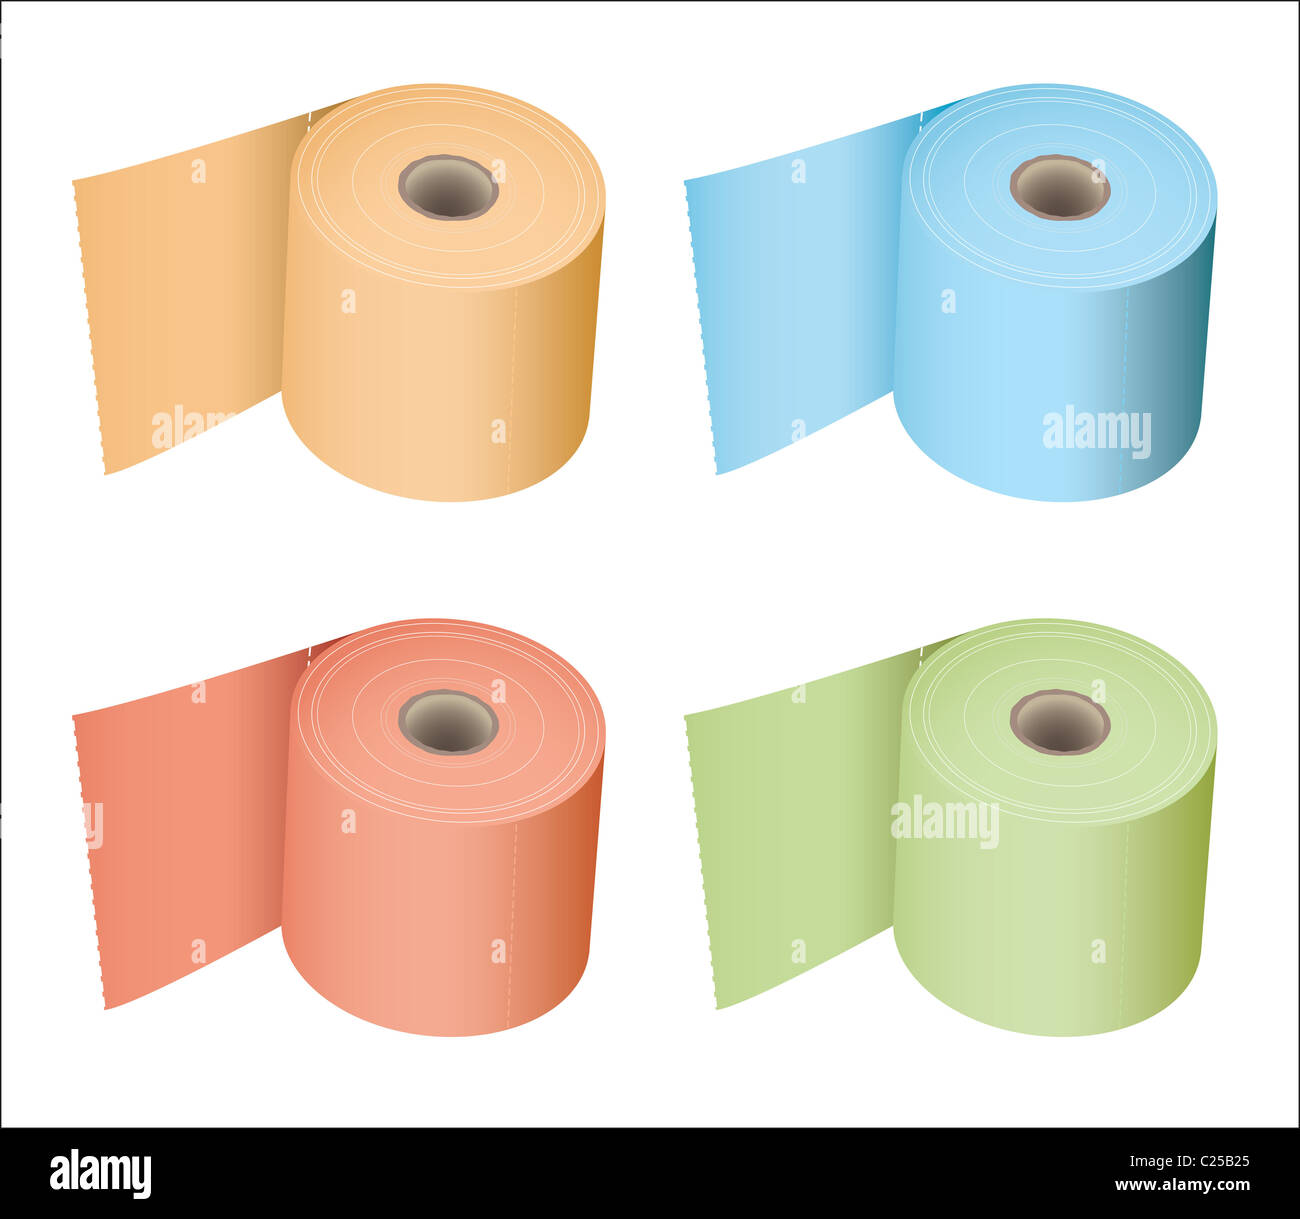 Rollo de papel higiénico de color en una gran variedad de sutiles colores  tejido Fotografía de stock - Alamy